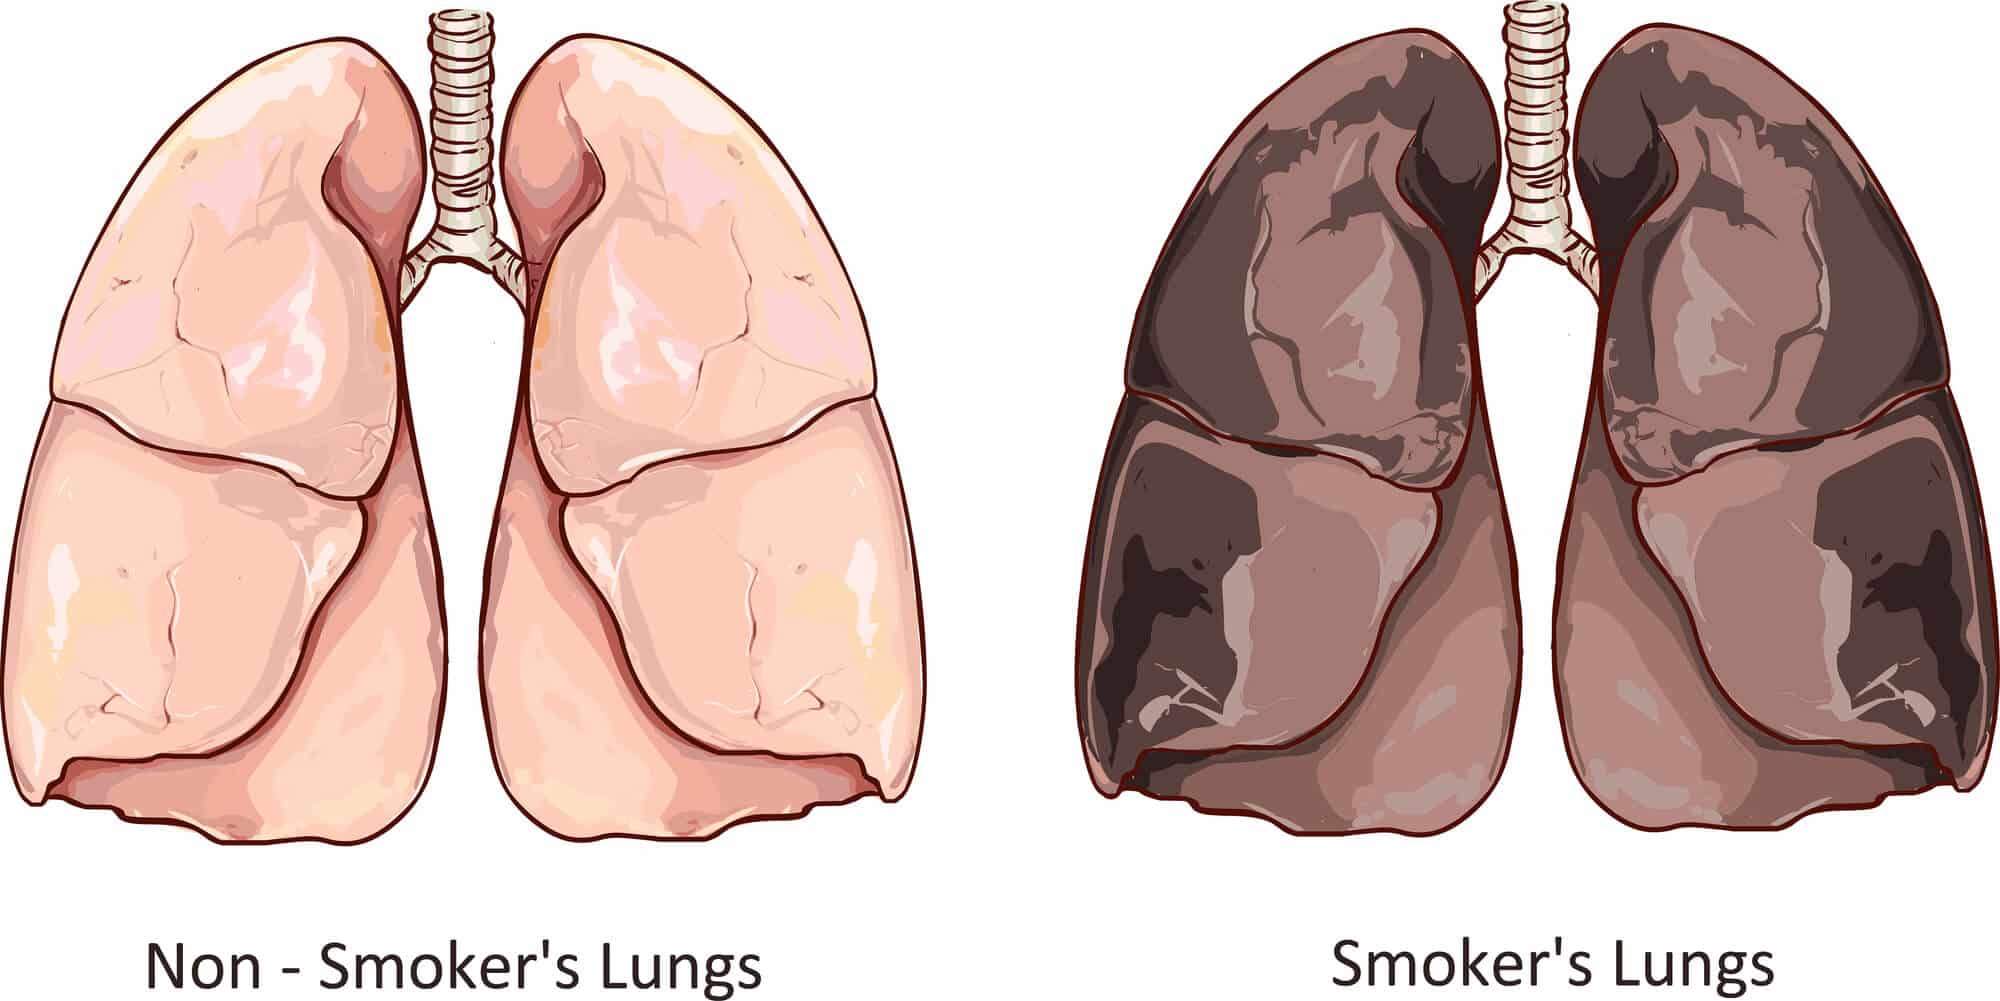 ריאה של מעשן בהשוואה לריאה נקיה. <a href="https://depositphotos.com. ">המחשה: depositphotos.com</a>